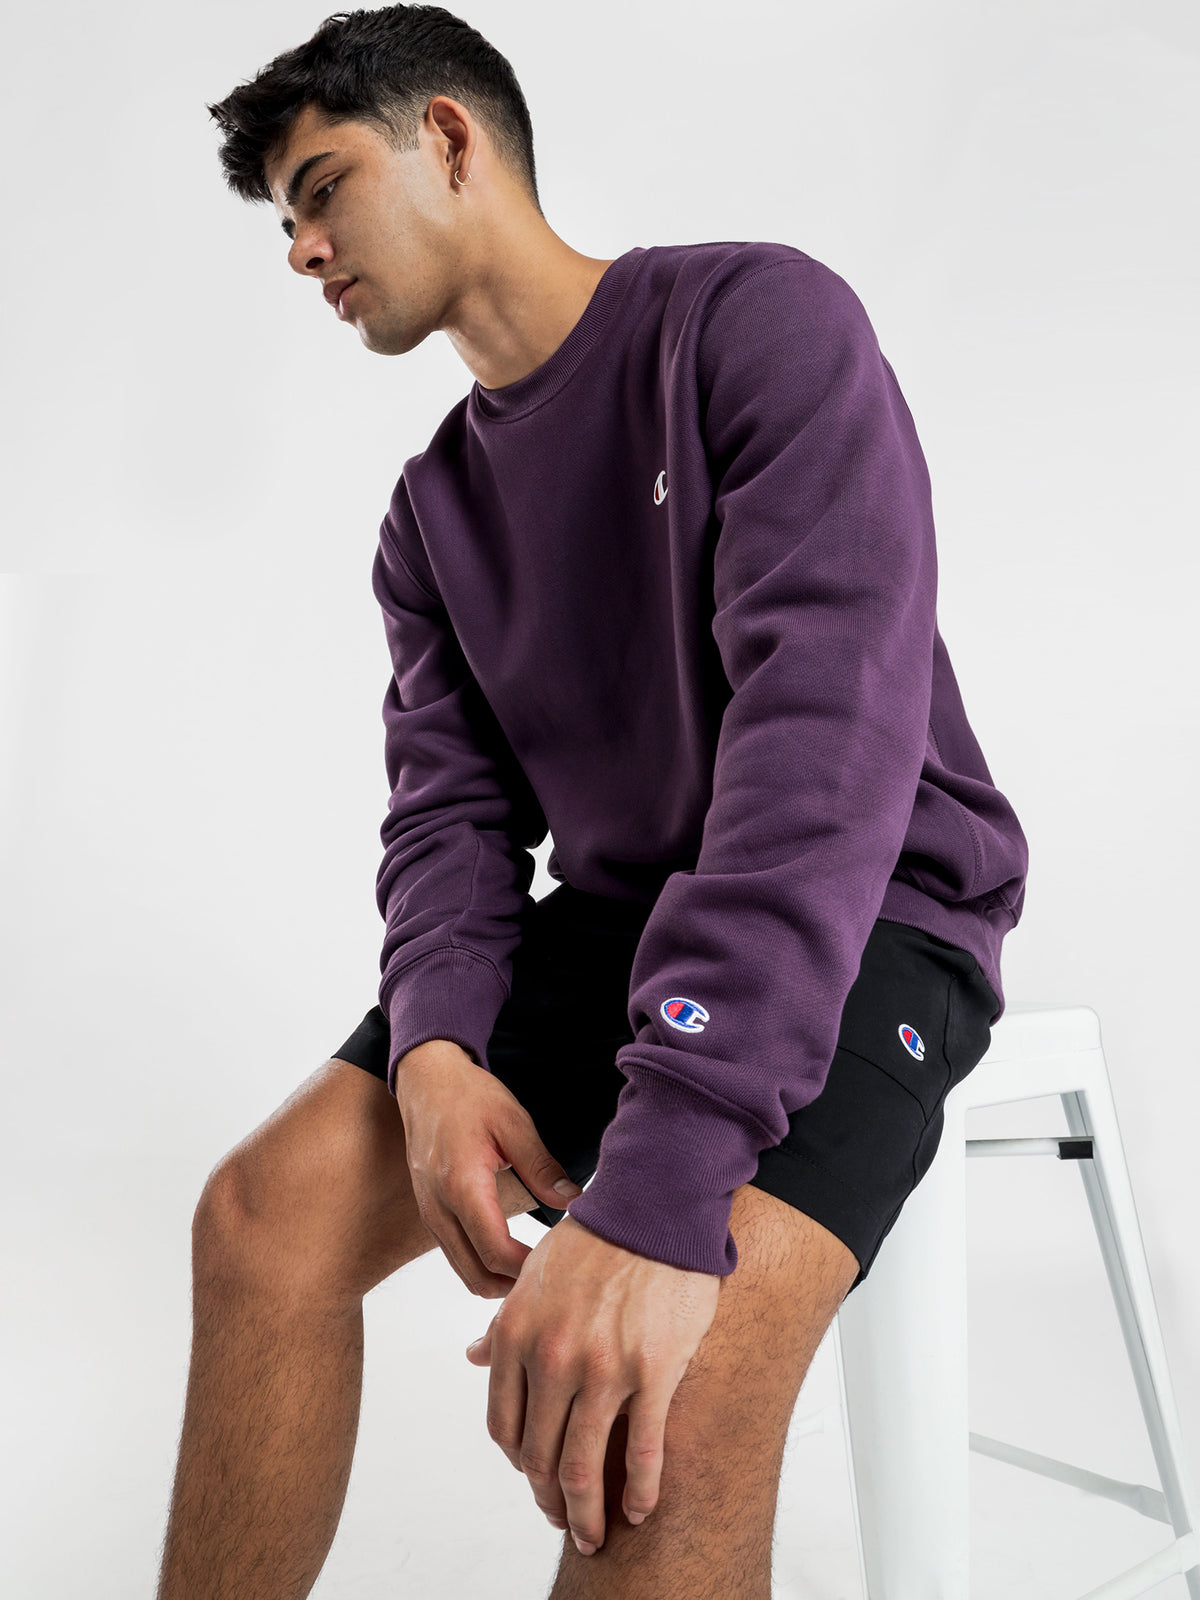 Reverse Weave Crew Sweater in Purple